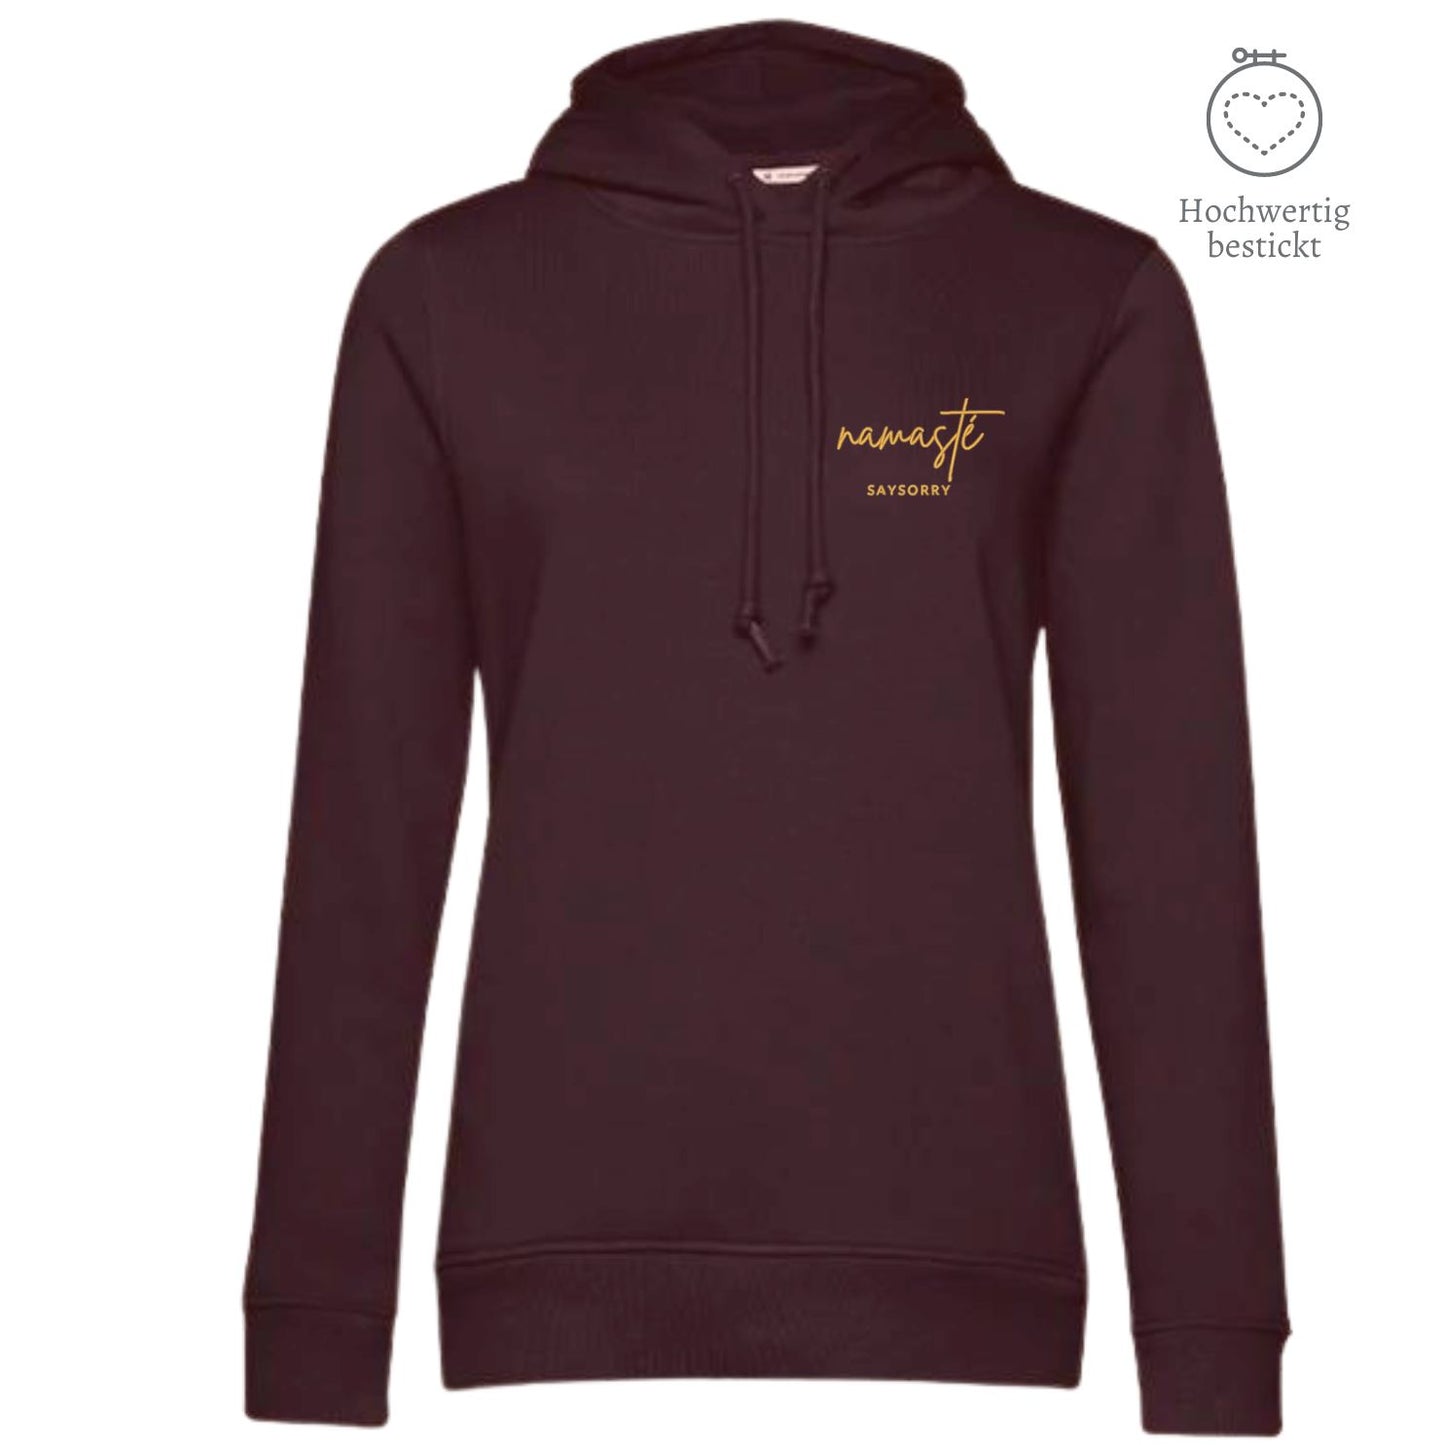 Organic & recycelter Damen Hoodie »Namasté in Gold« hochwertig bestickt Shirt SAYSORRY Burgundy XS 